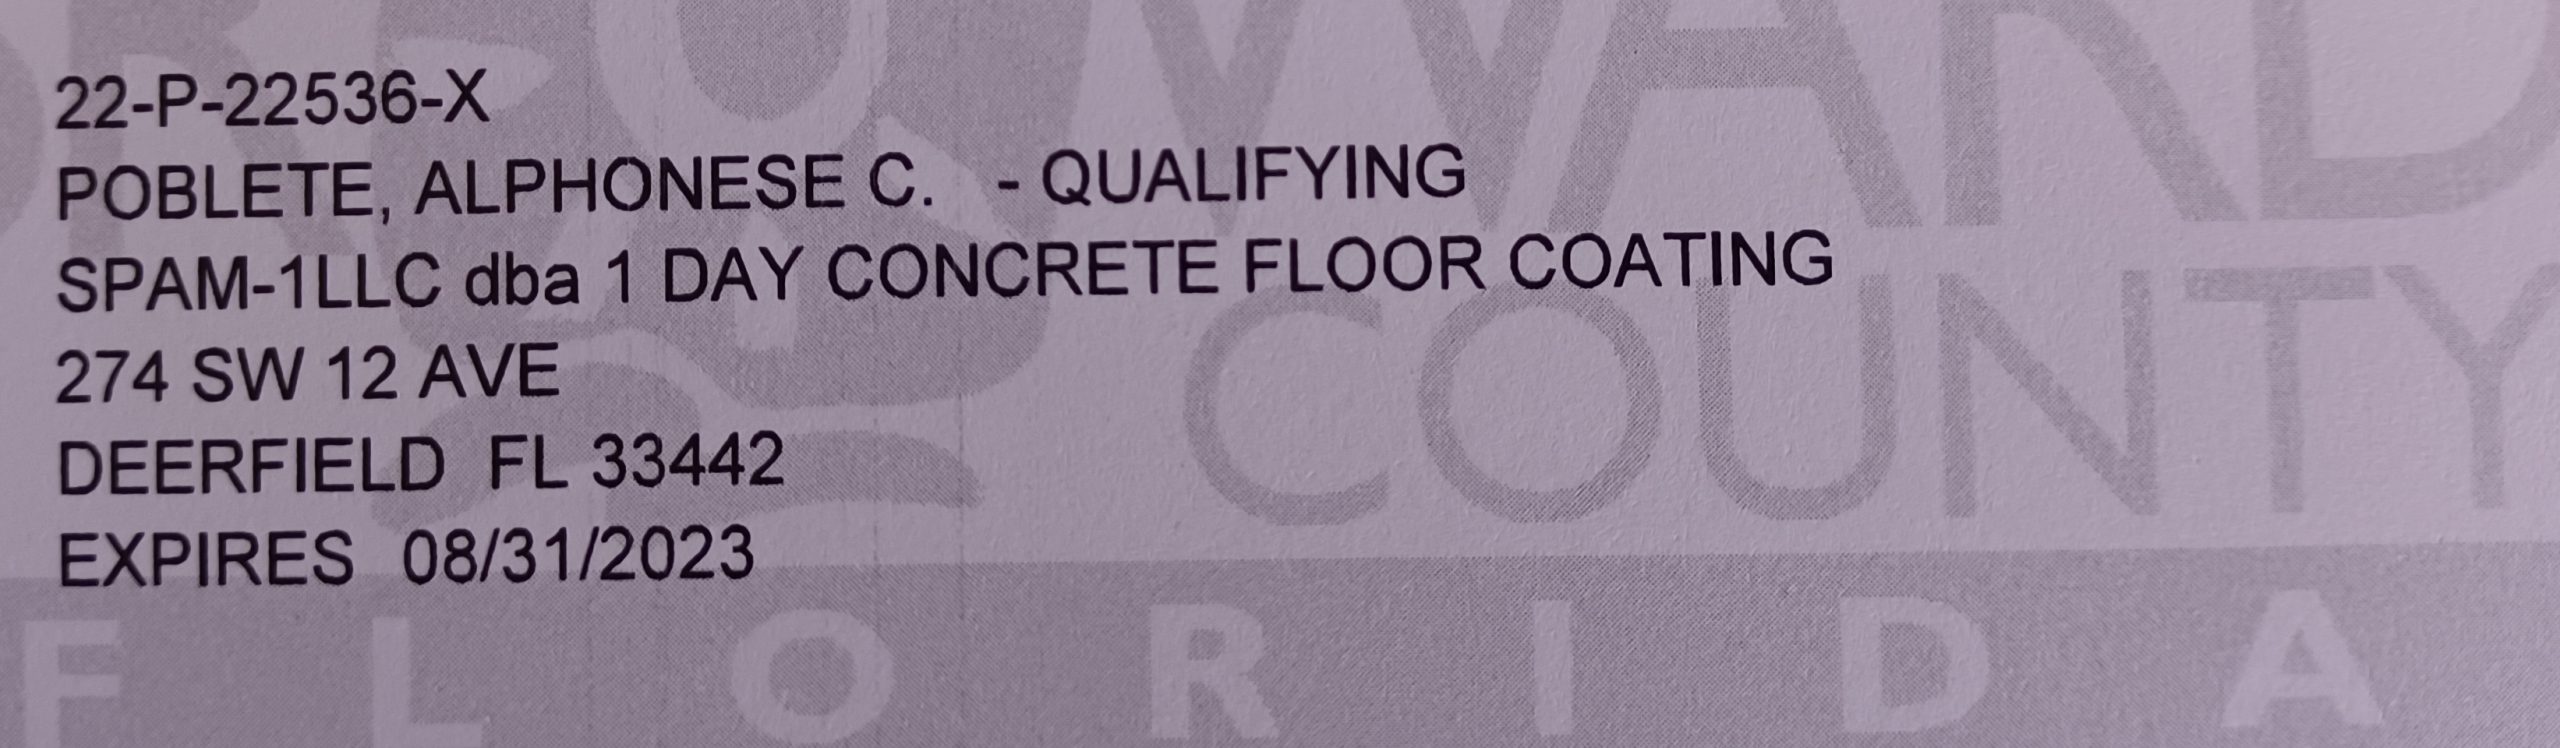 1 Day Floor Coating Certificate License